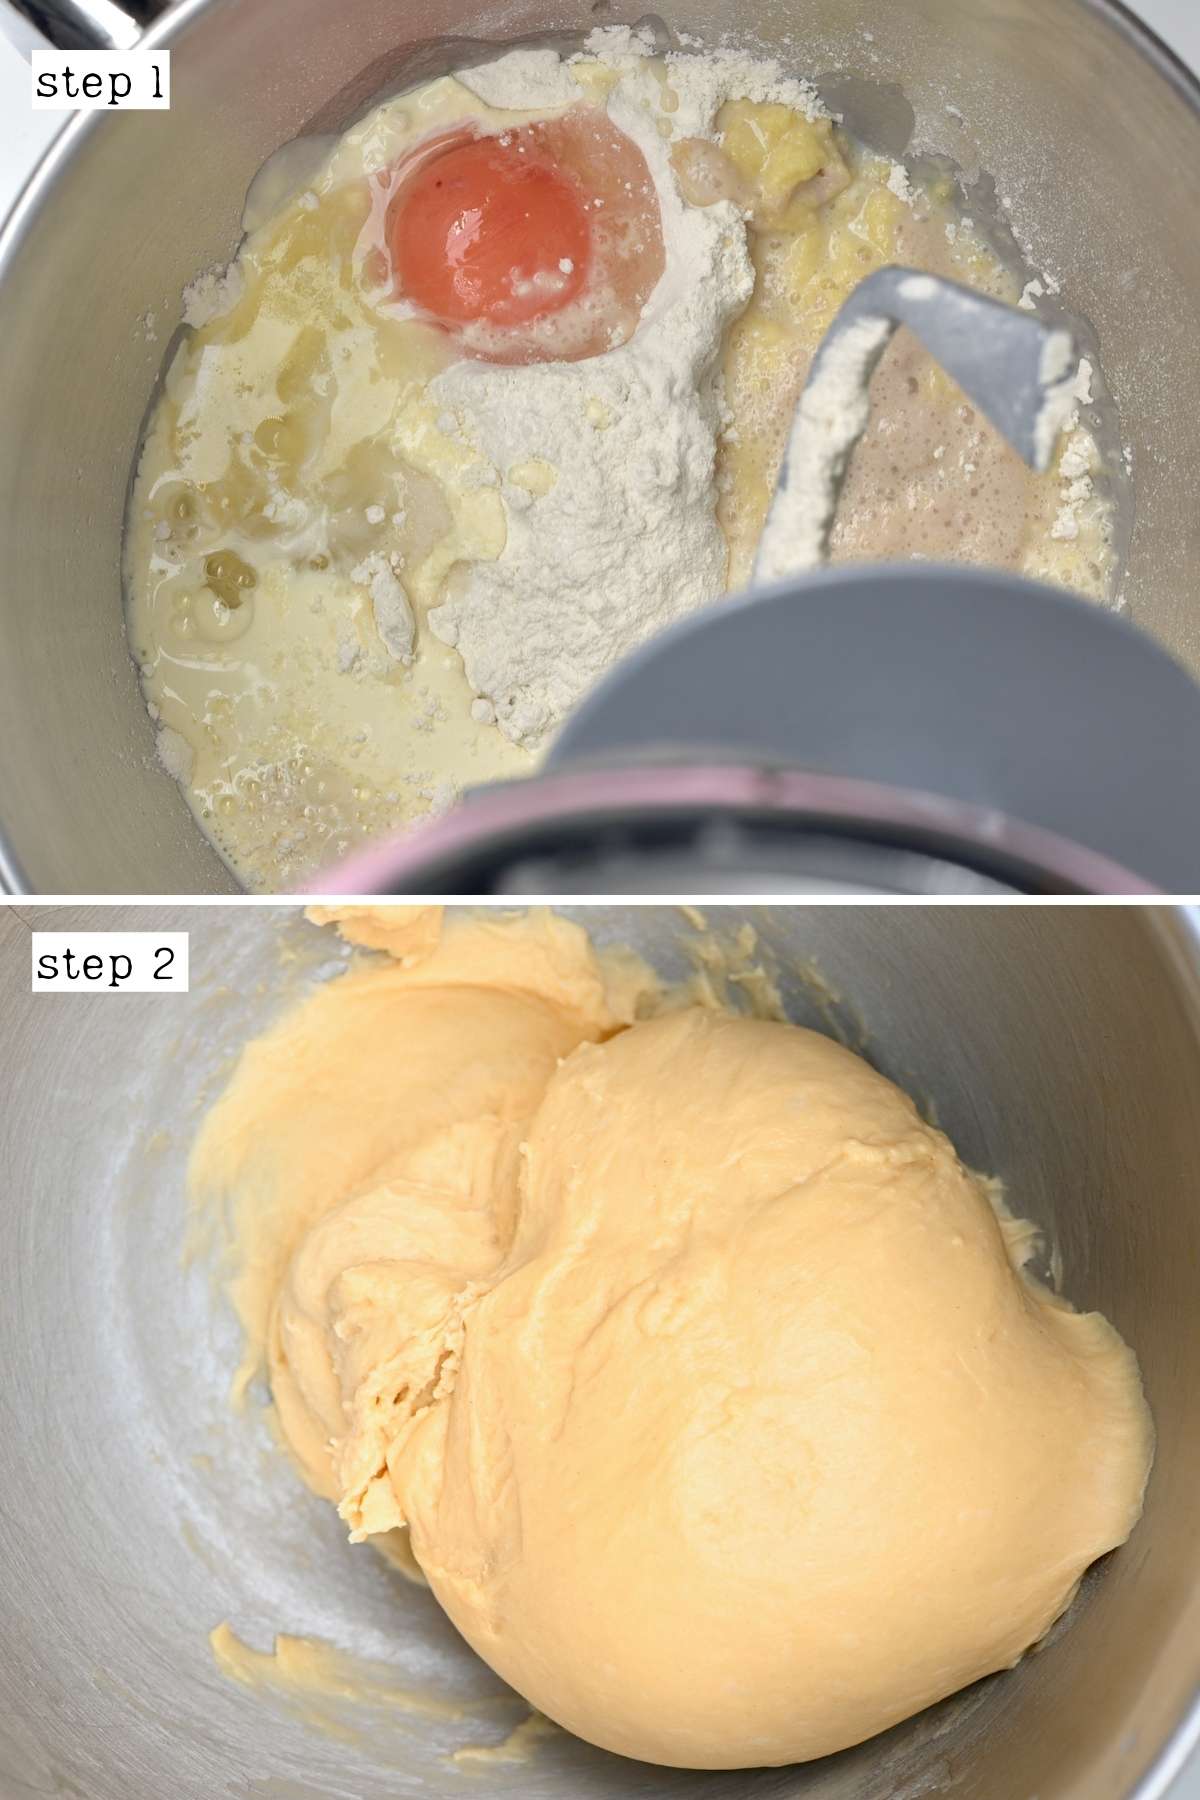 Steps for making brioche dough